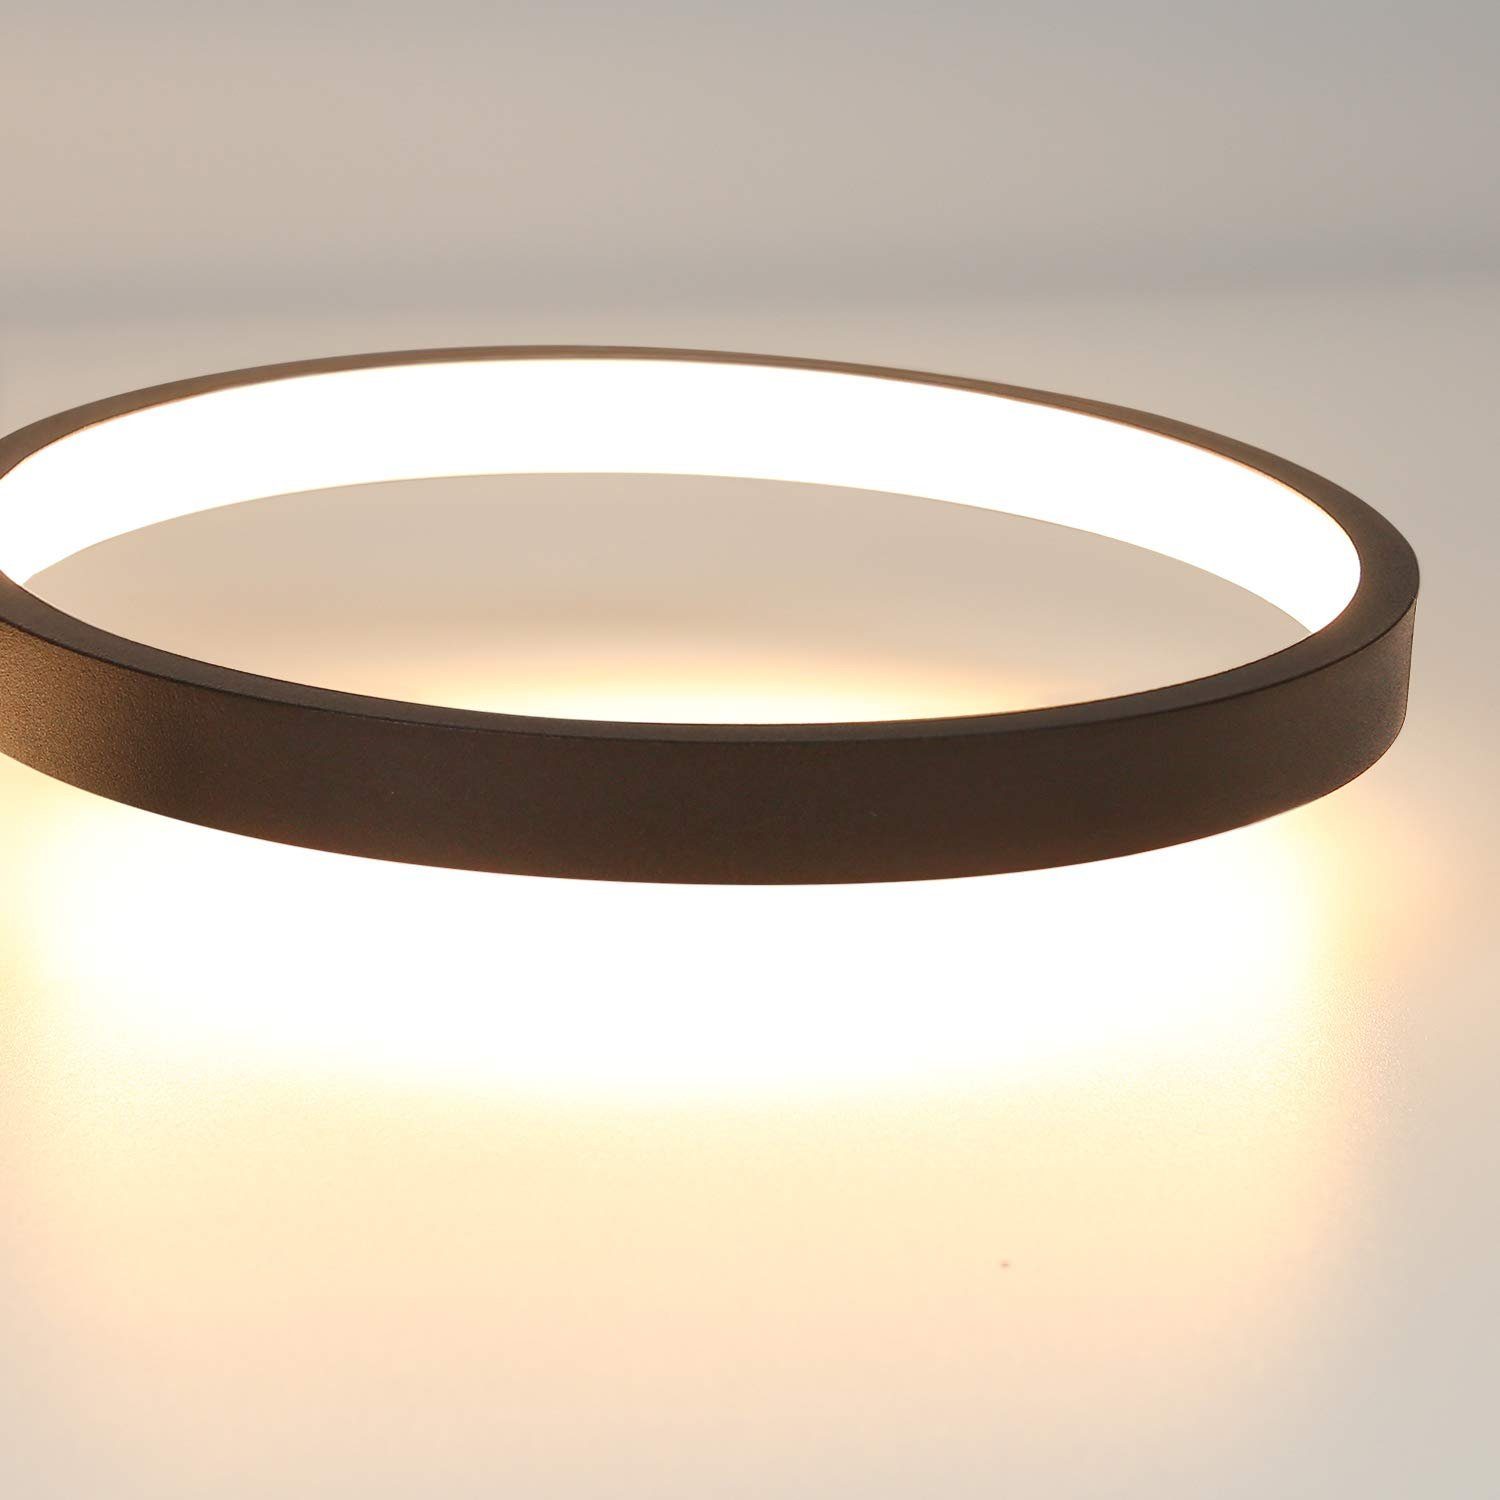 ZMH LED Deckenlampe Designlampe, Schwarz dimmbar warmweiß-kaltweiß, Deckenleuchte LED